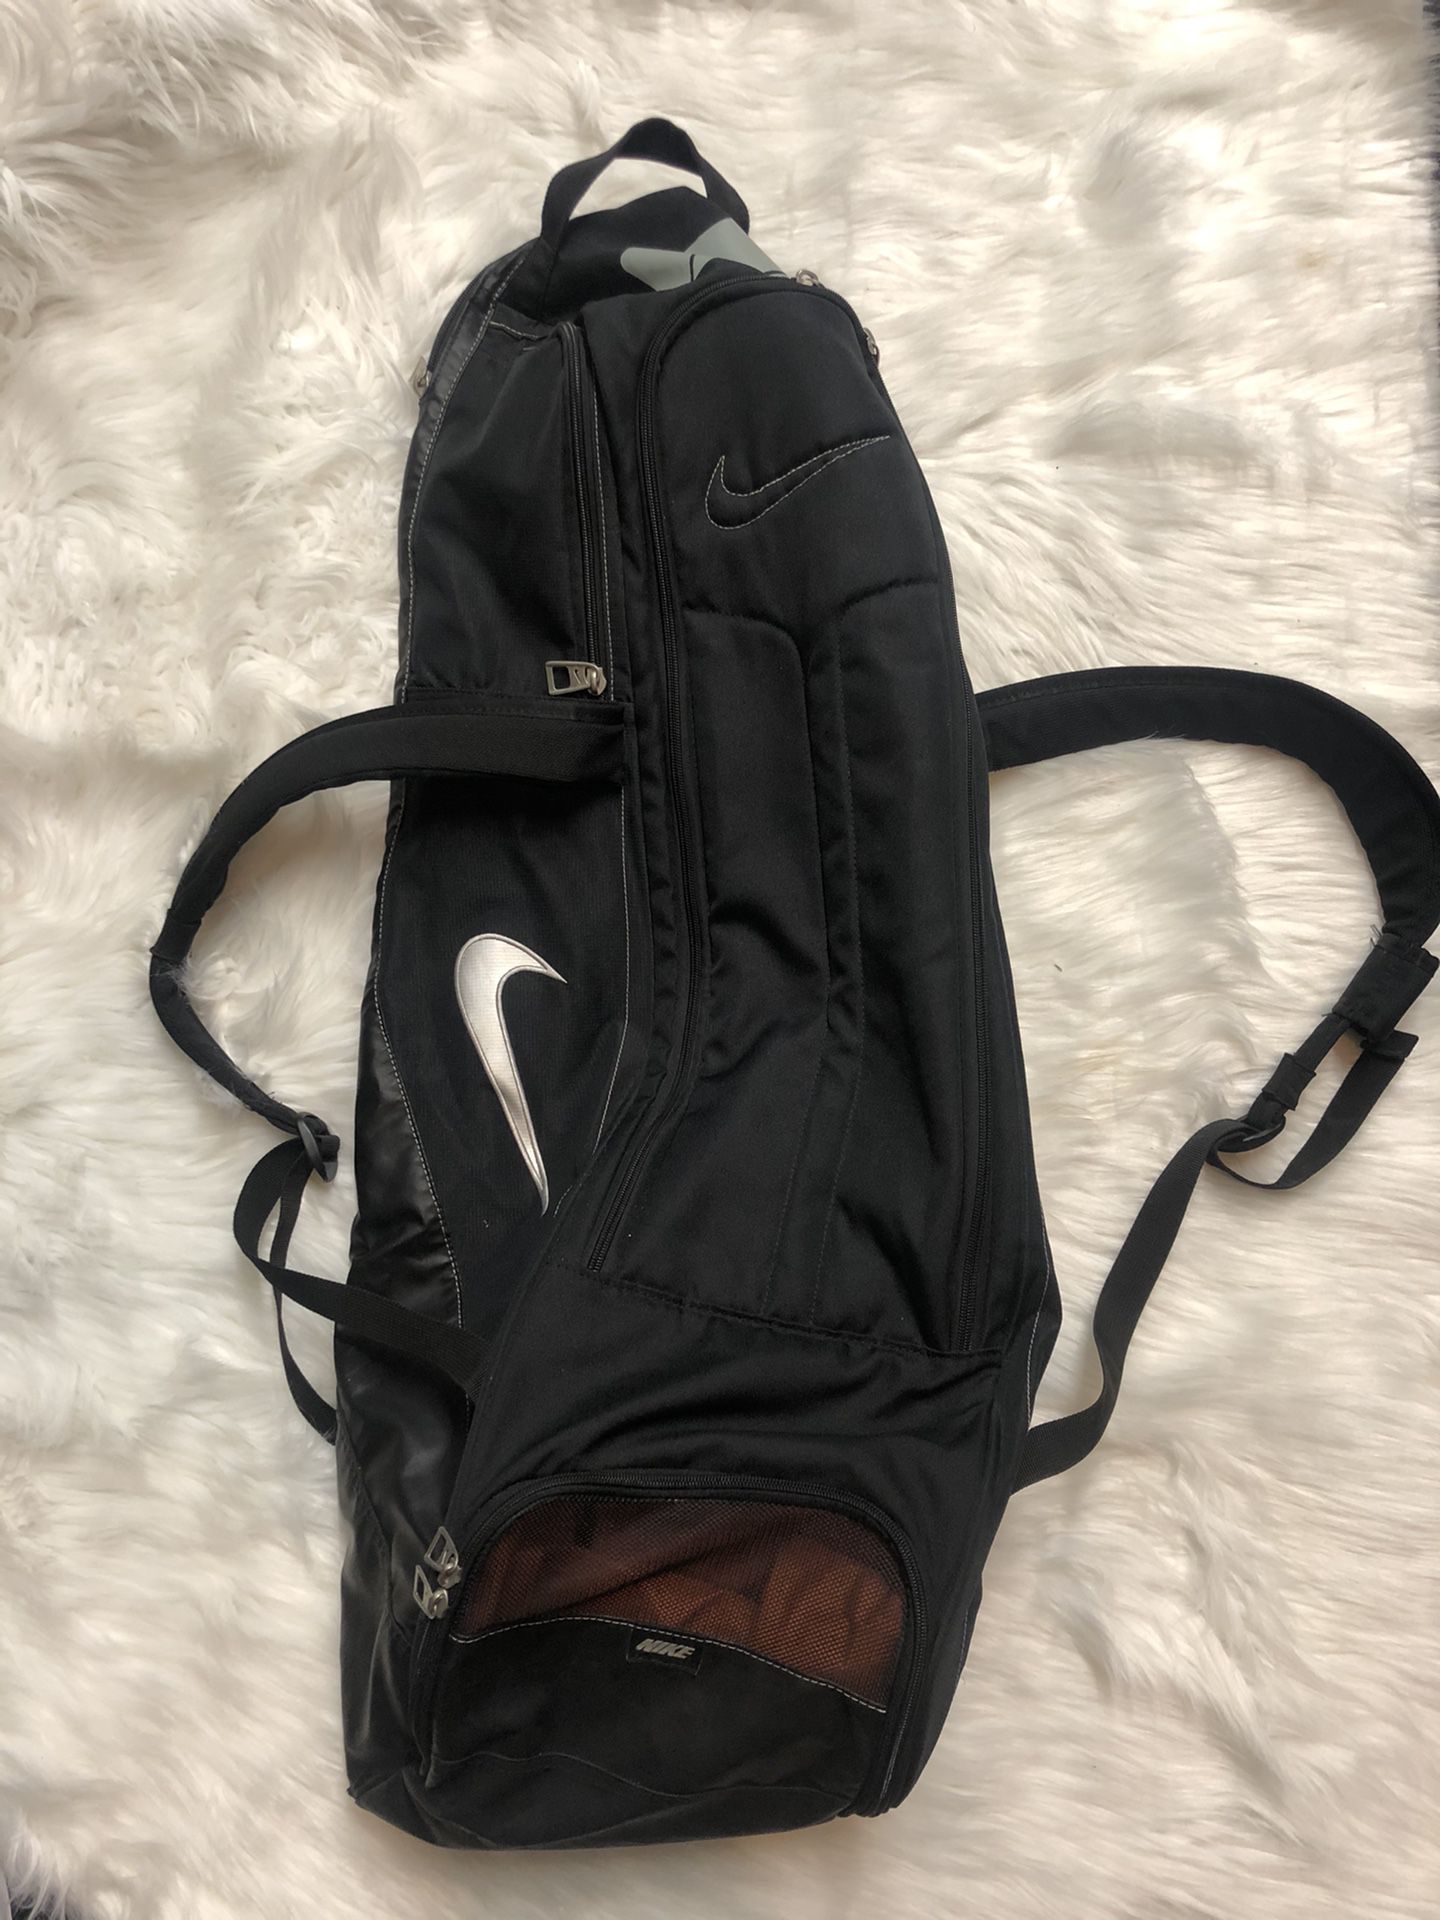 Nike Baseball Bat Backpack Bag